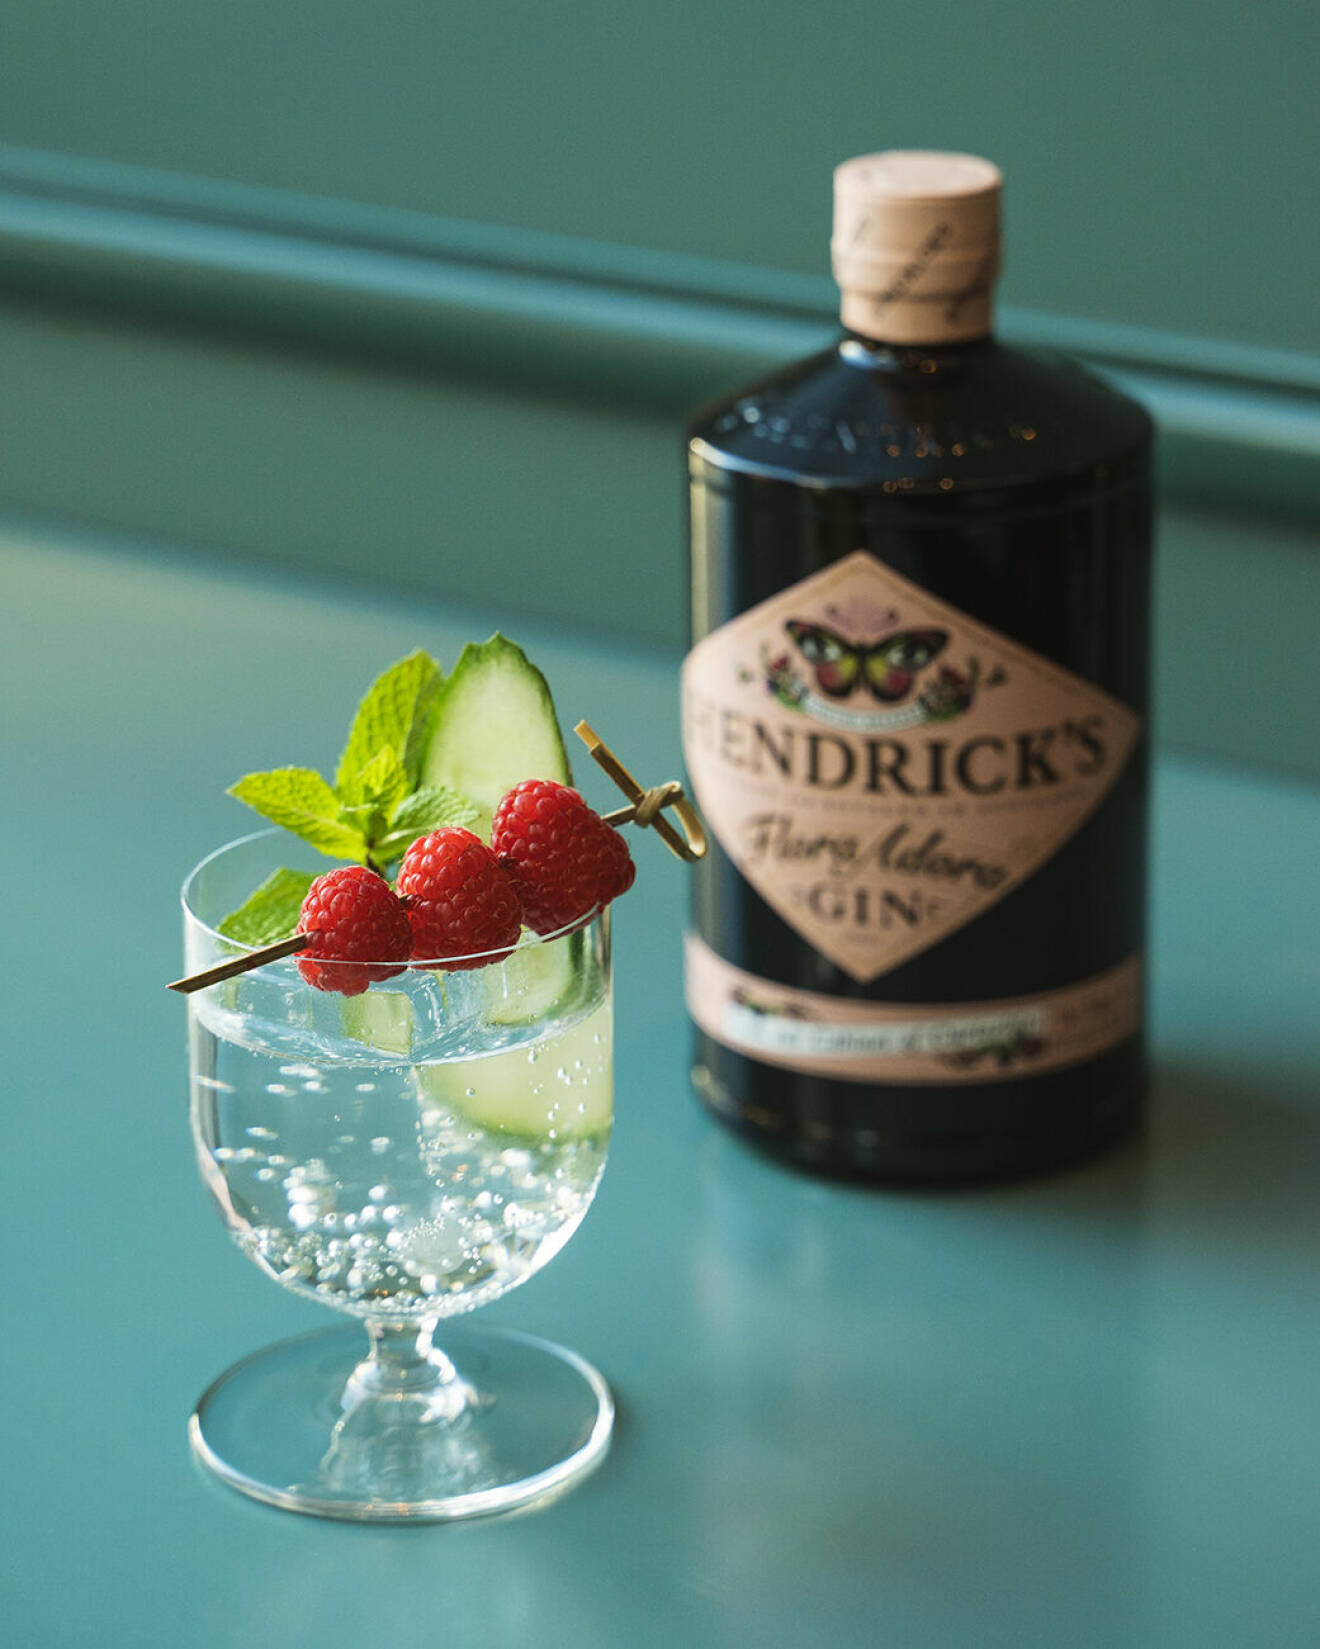 Adora elderflower är en gin och tonic med somrig smak av fläder